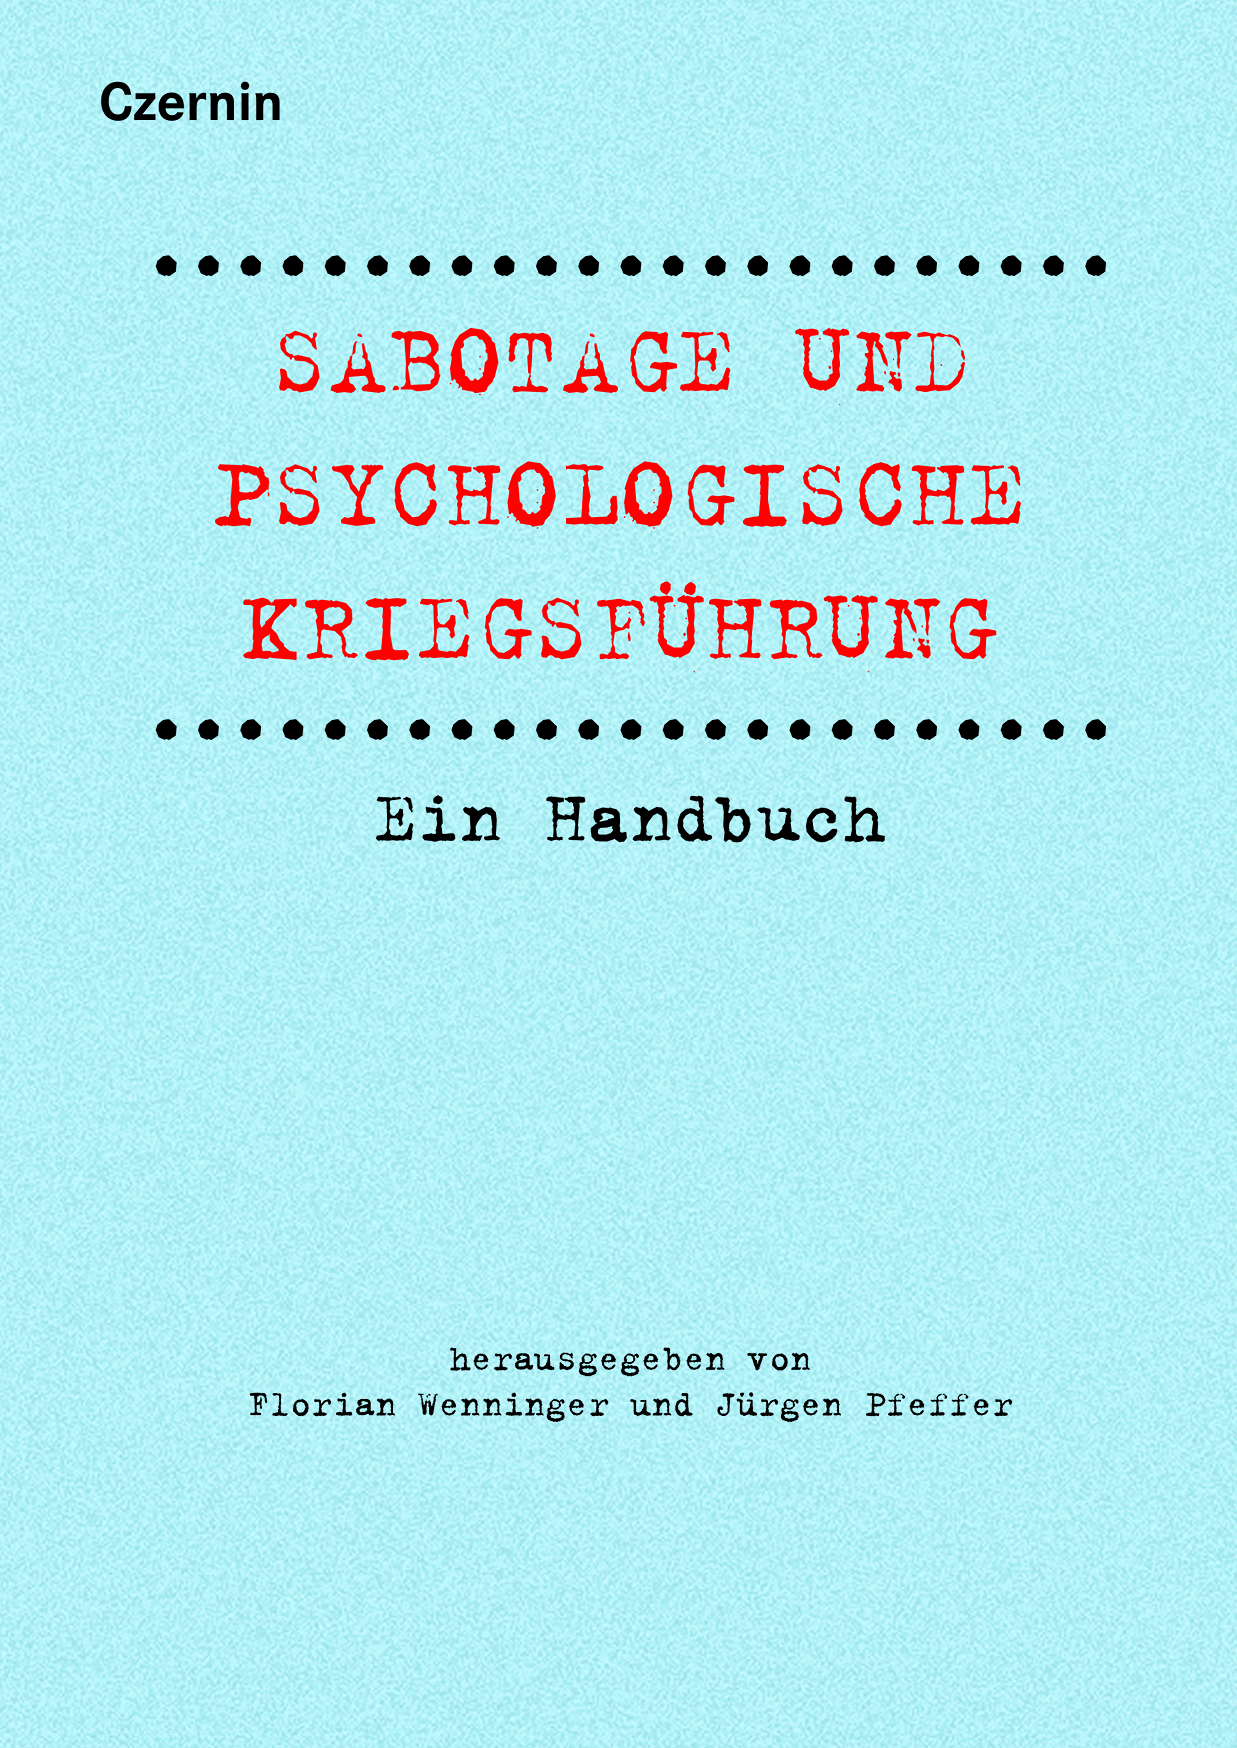 Buchcover von "Sabotage und psychologische Kriegsführung"